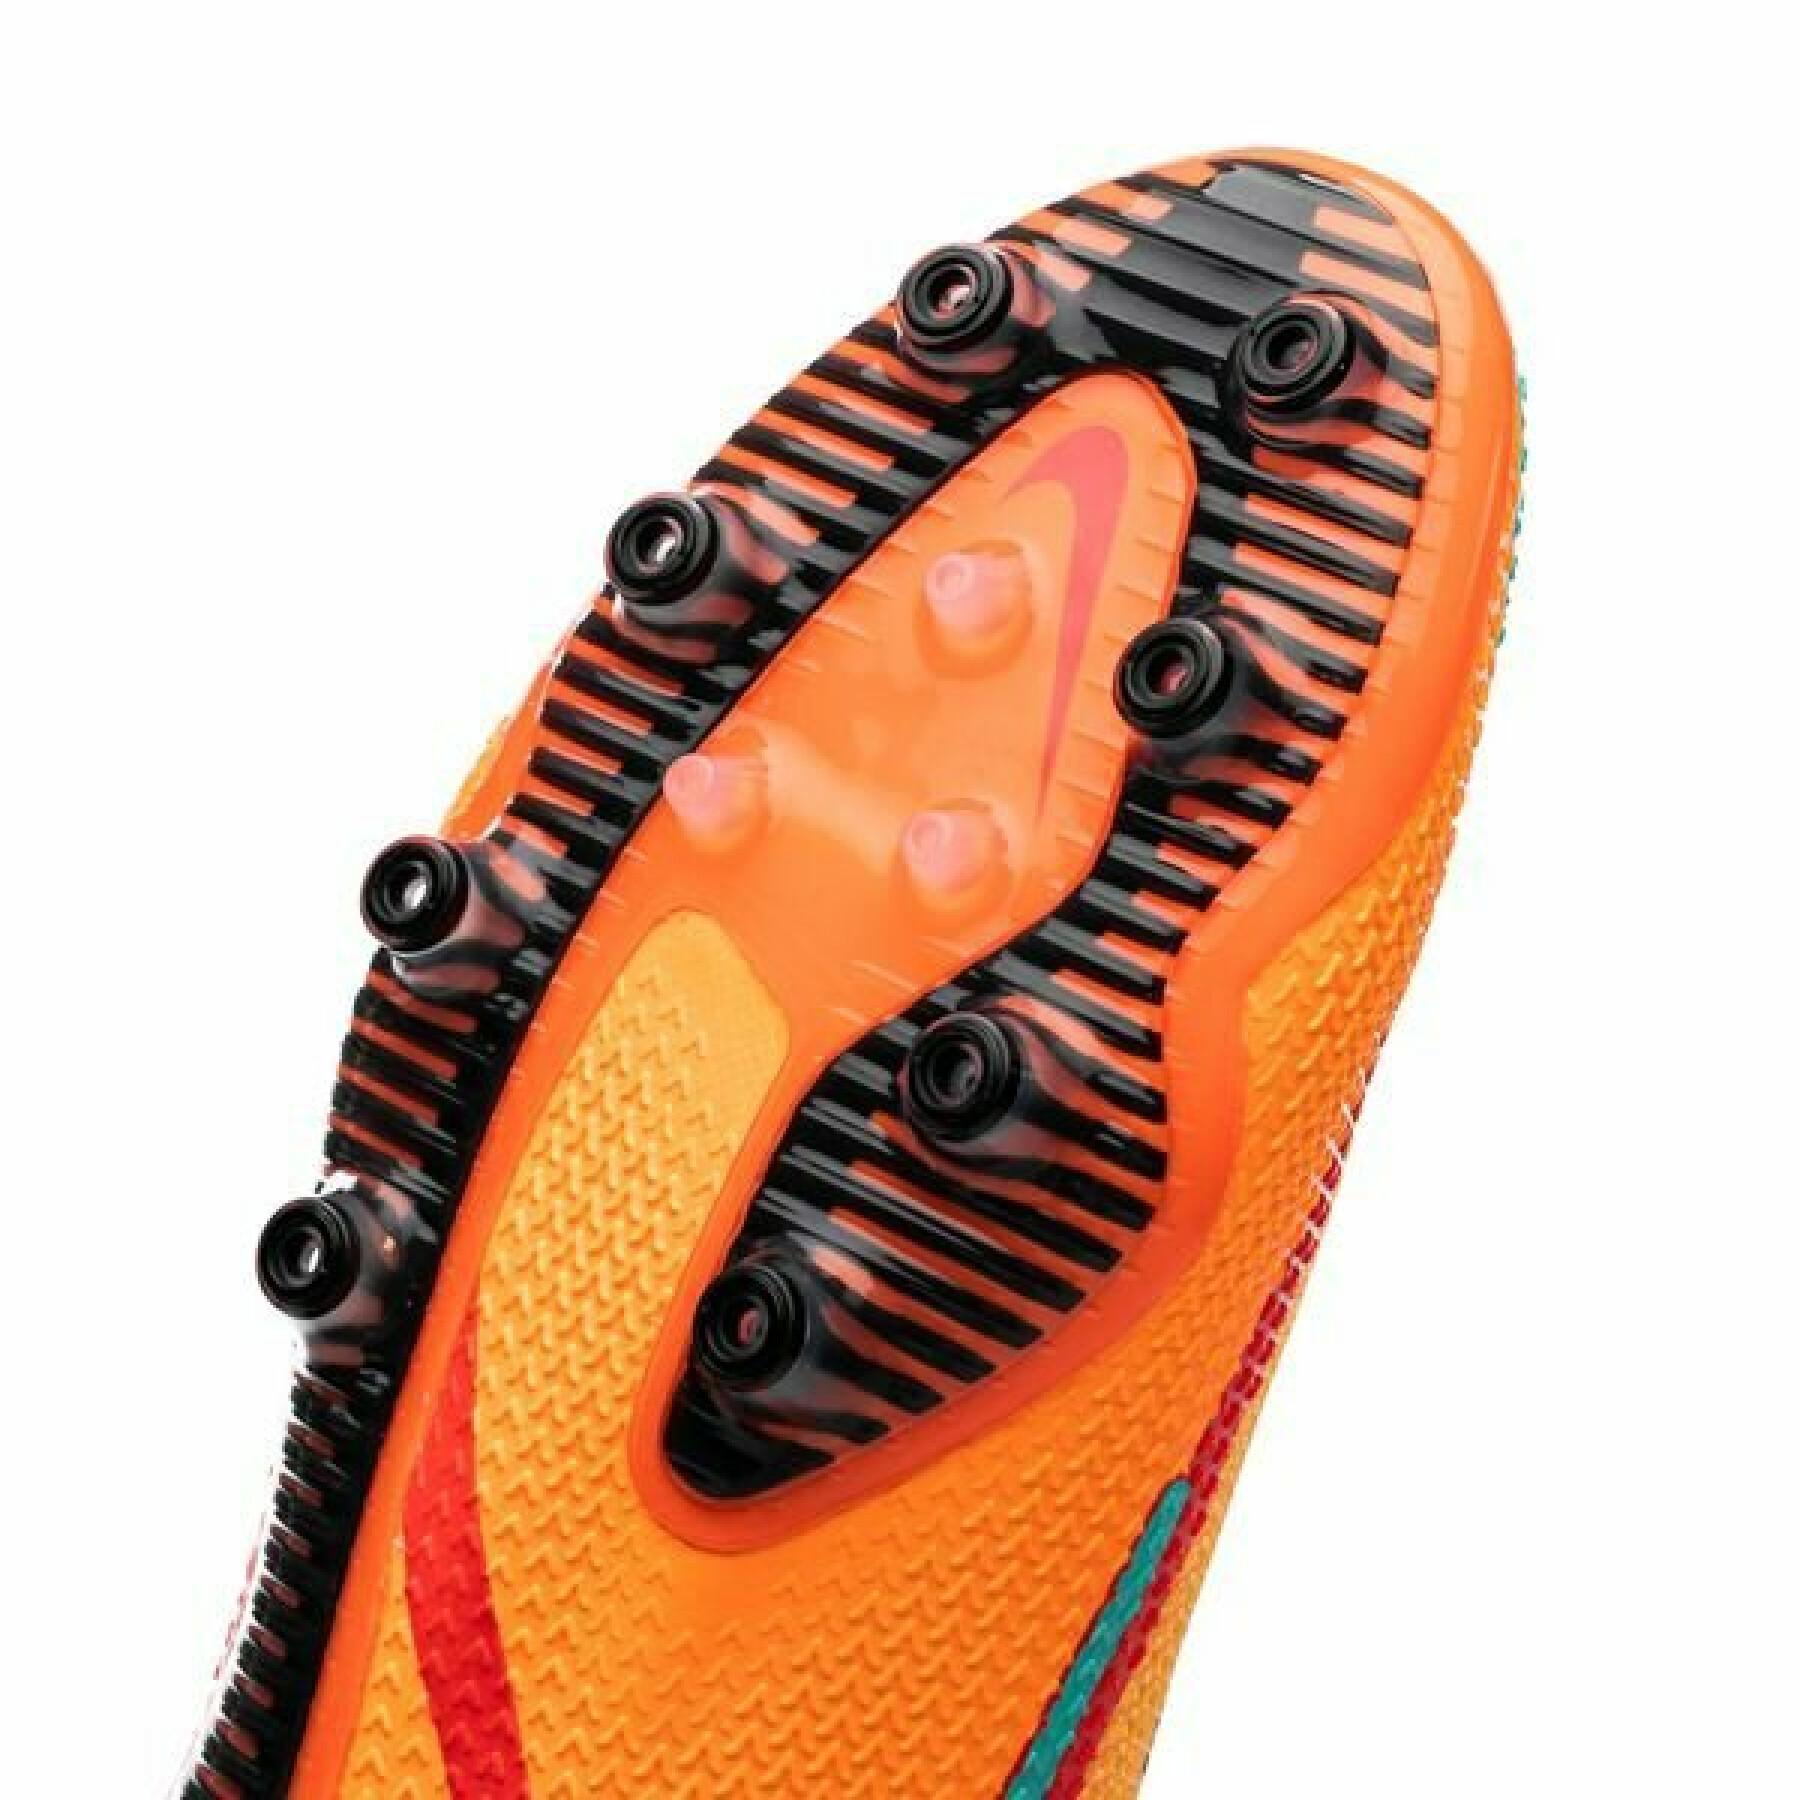 Soccer shoes Nike Phantom GT2 Élite AG-Pro